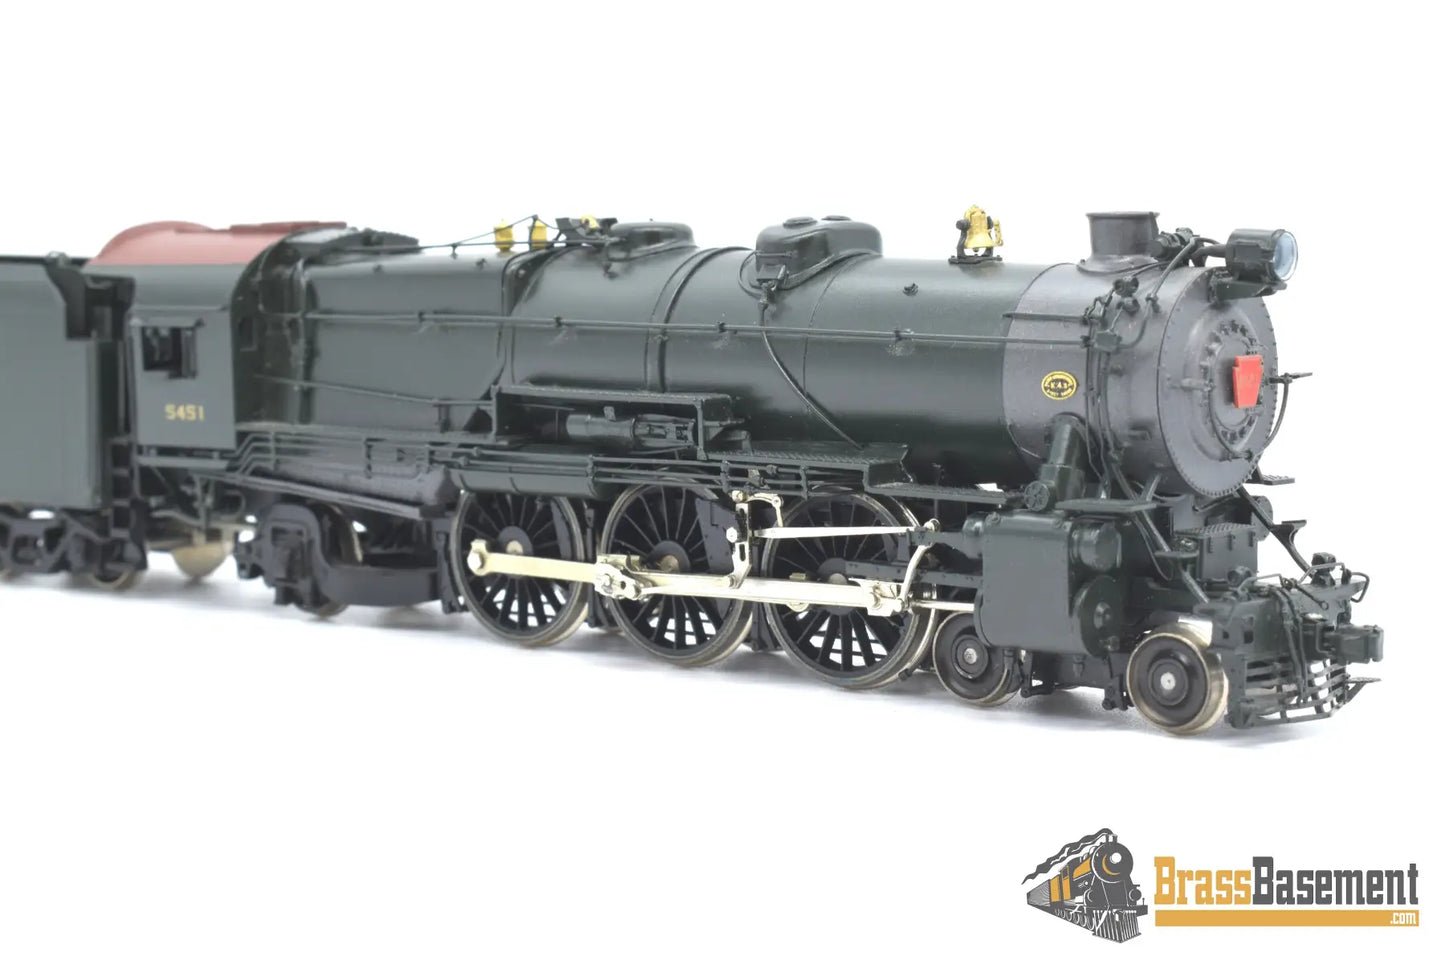 Ho Brass - Railworks Pennsylvania Railroad Prr K - 4S 4 - 6 - 2 Pacific #5451 Factory Paint Dcc